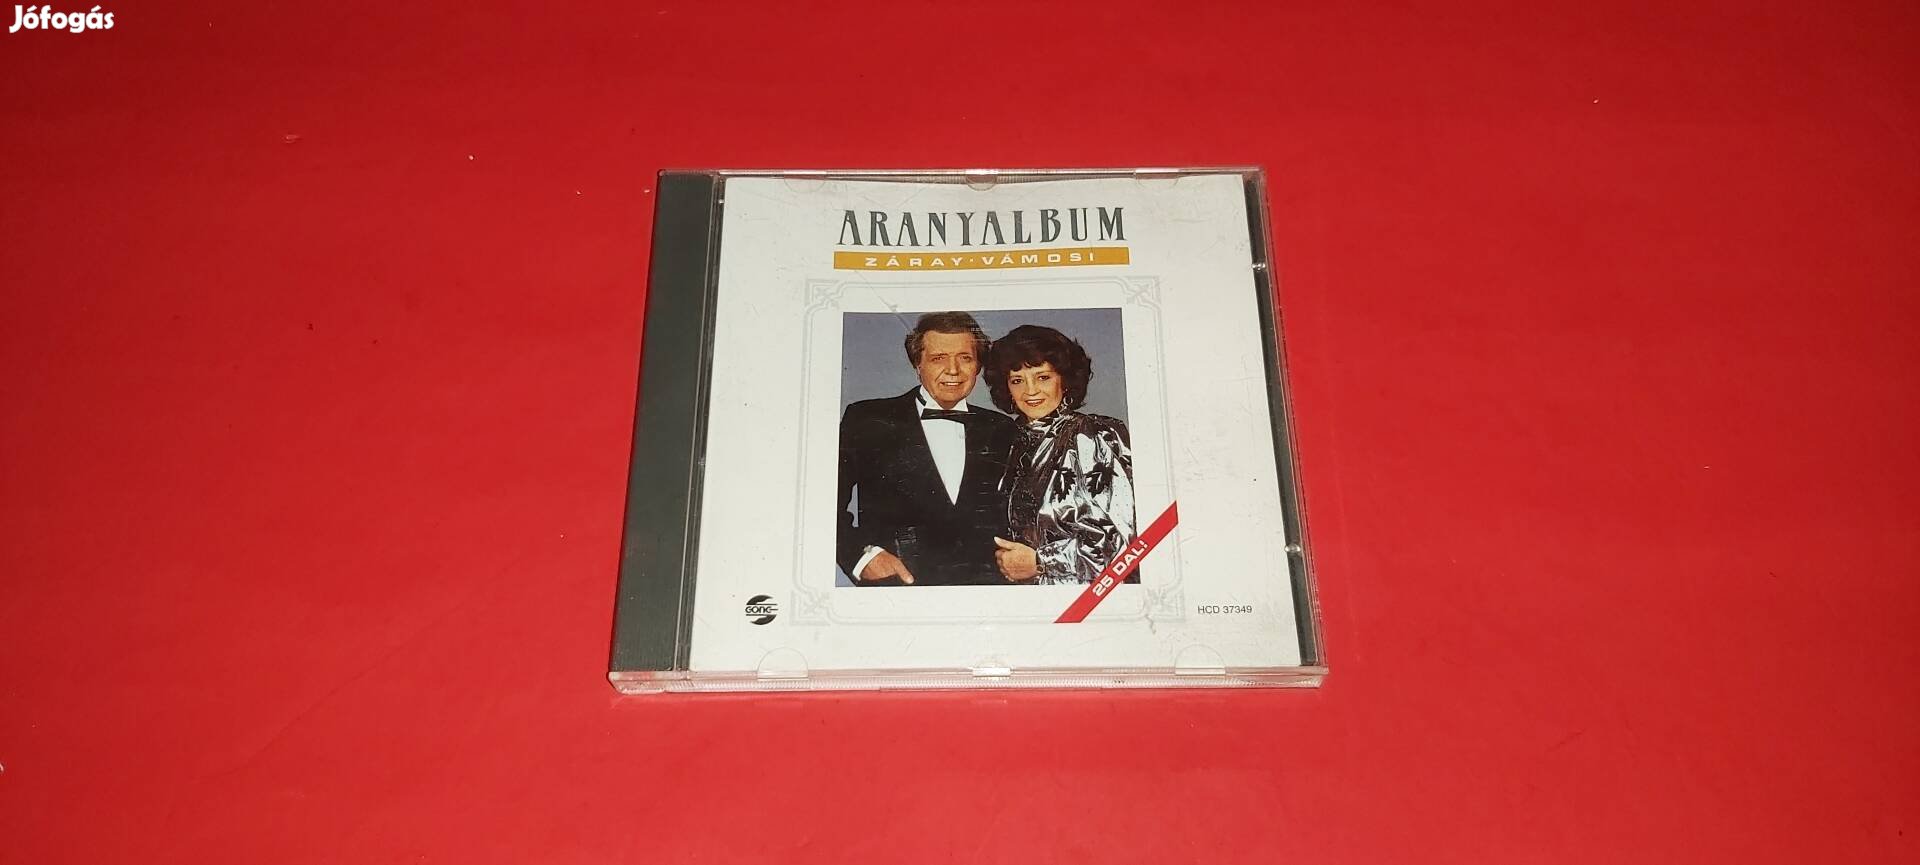 Záray-Vámosi Aranyalbum Cd 1990